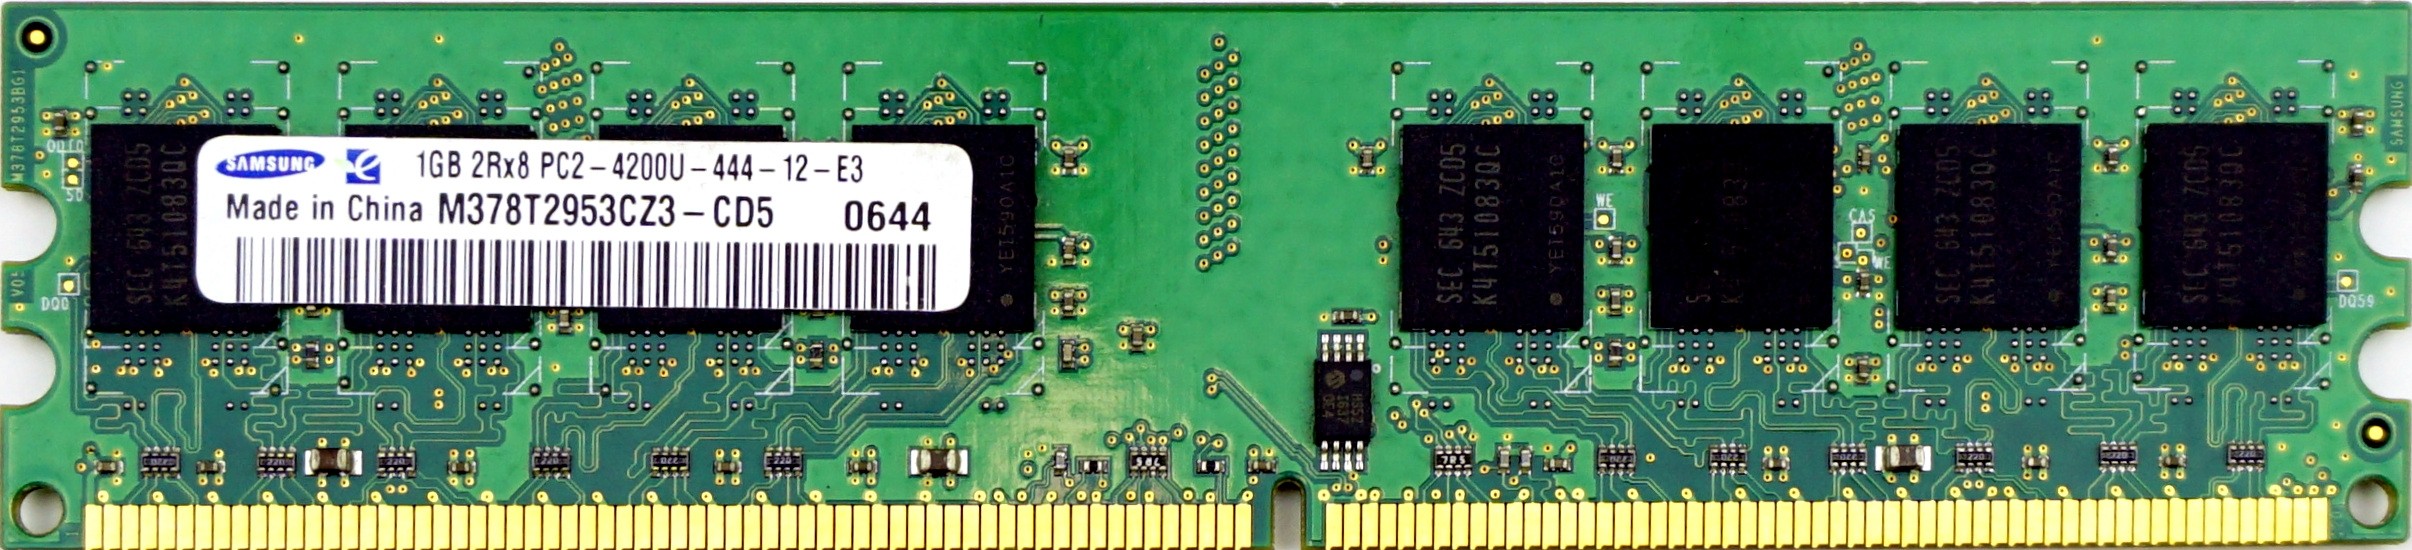 Samsung - 1GB PC2-4200U (DDR2-533Mhz, 2RX8)